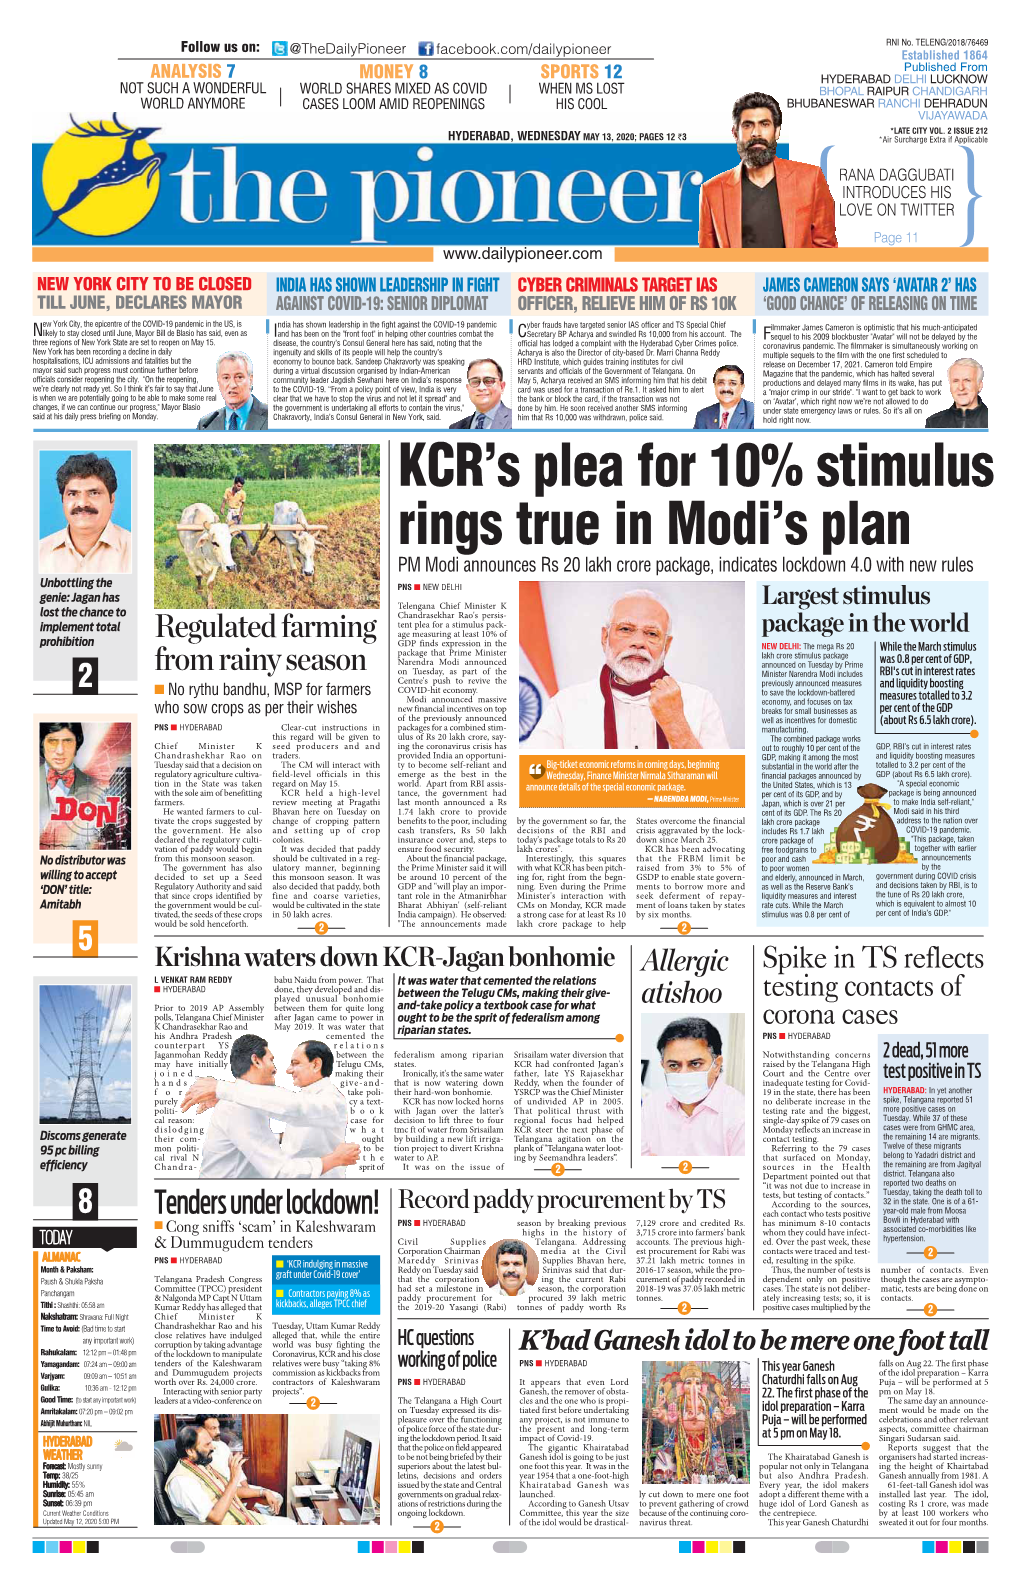 KCR's Plea for 10% Stimulus Rings True in Modi's Plan